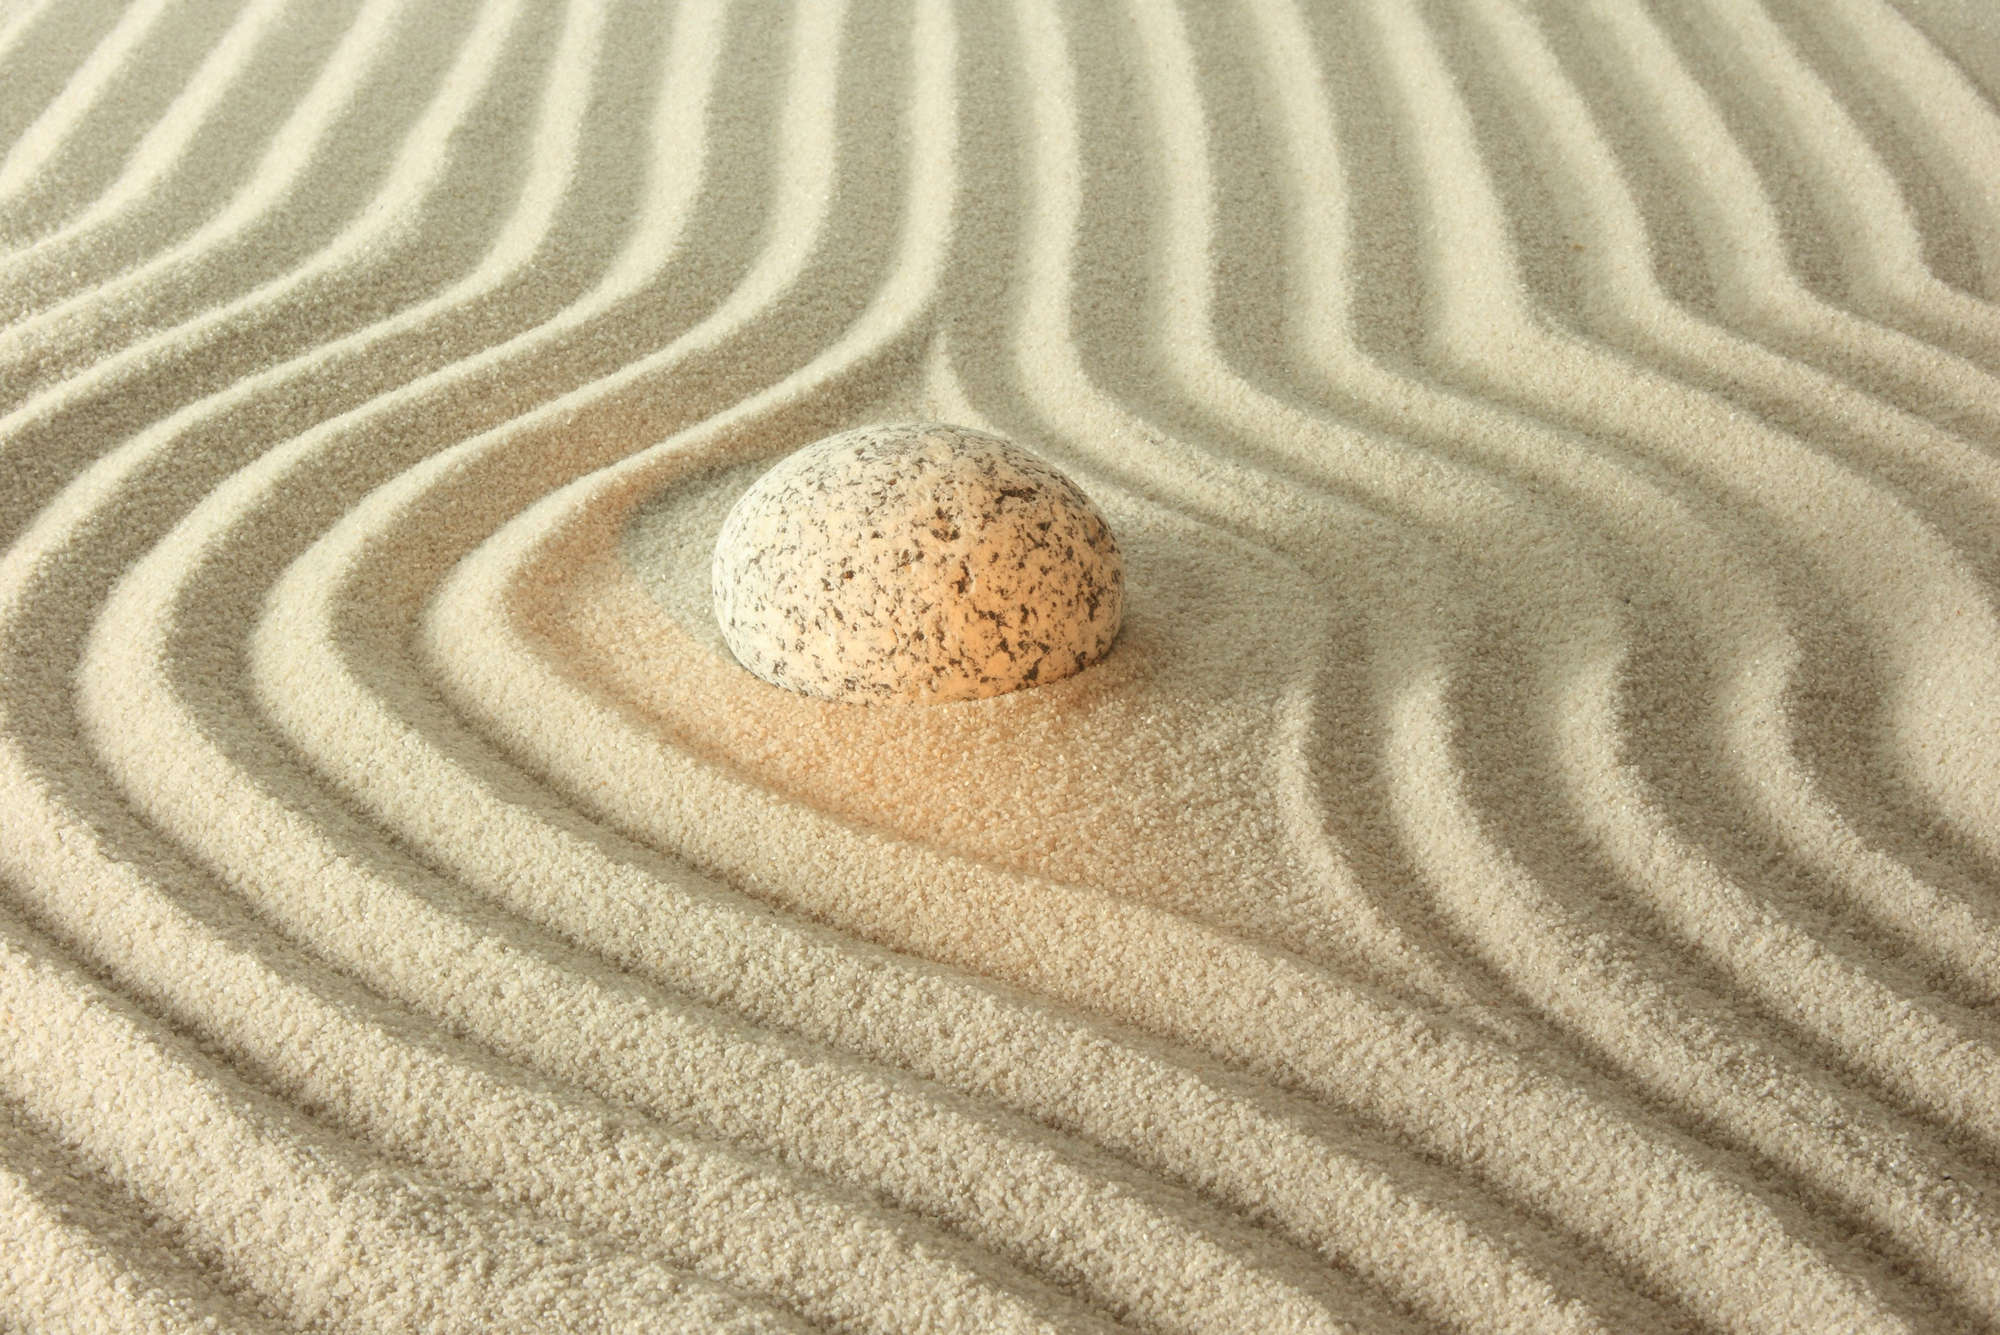             Fotomurali con pietra incandescente nella sabbia - Vello liscio Premium
        